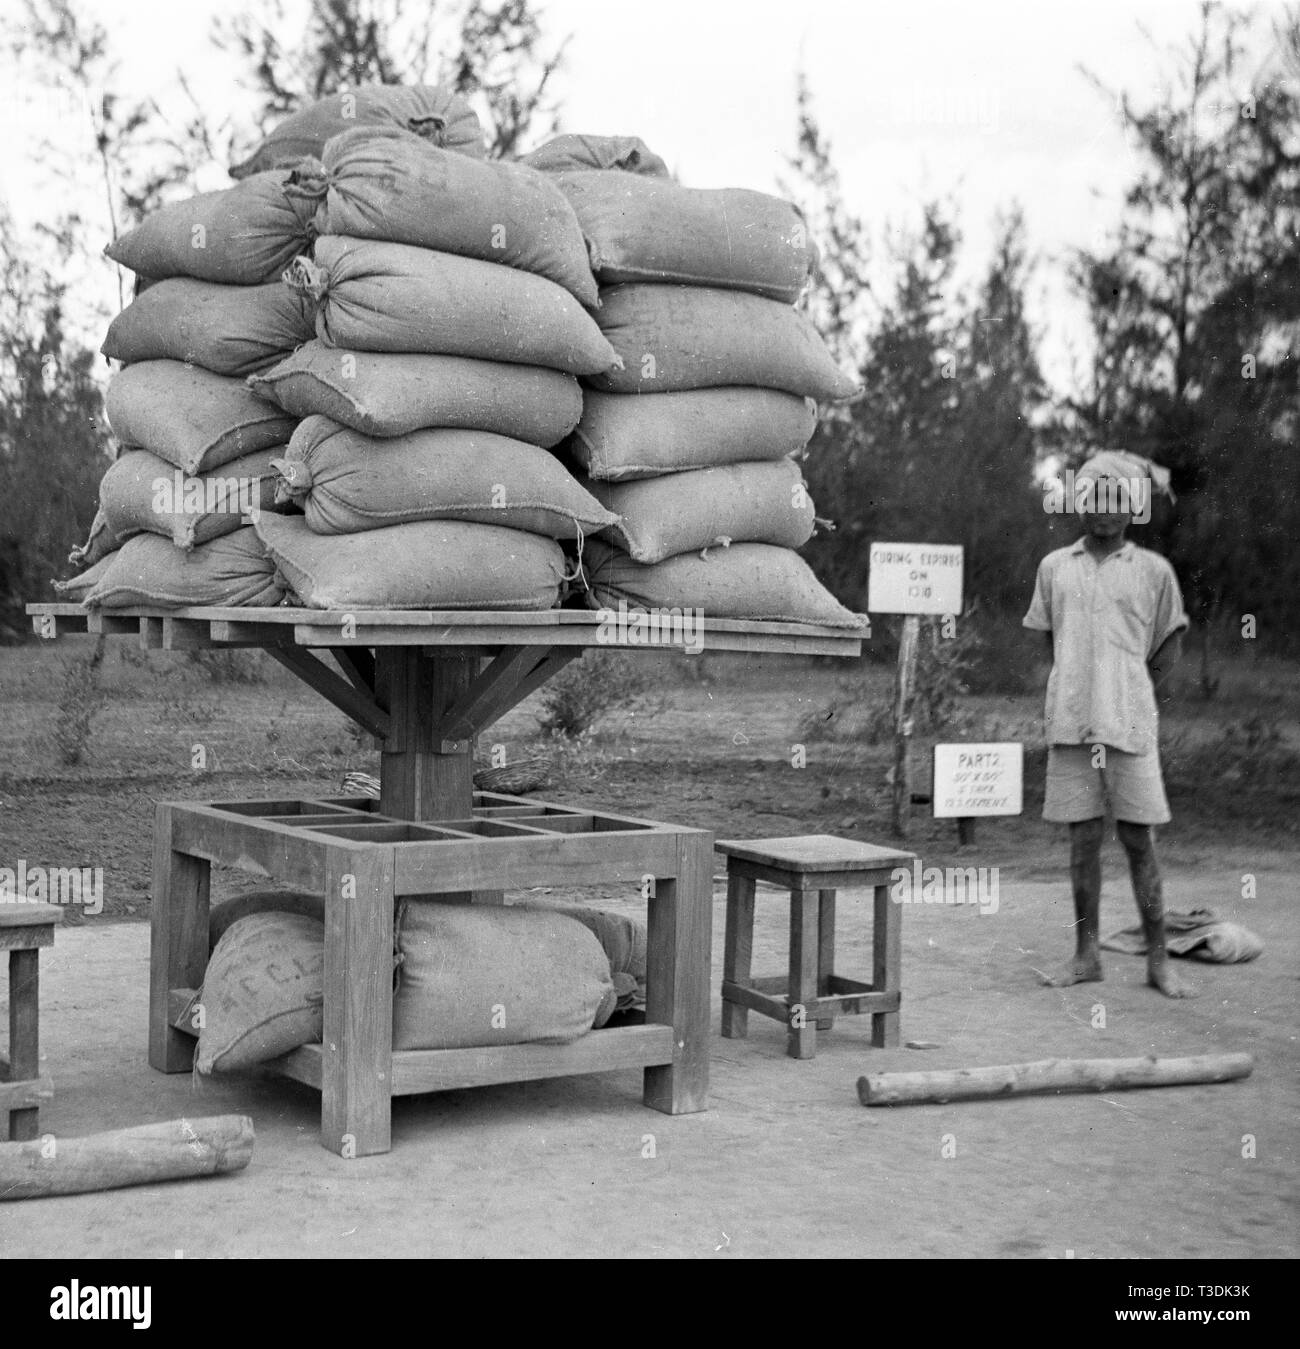 Les travailleurs des plantations en Inde Britannique 1945 Banque D'Images